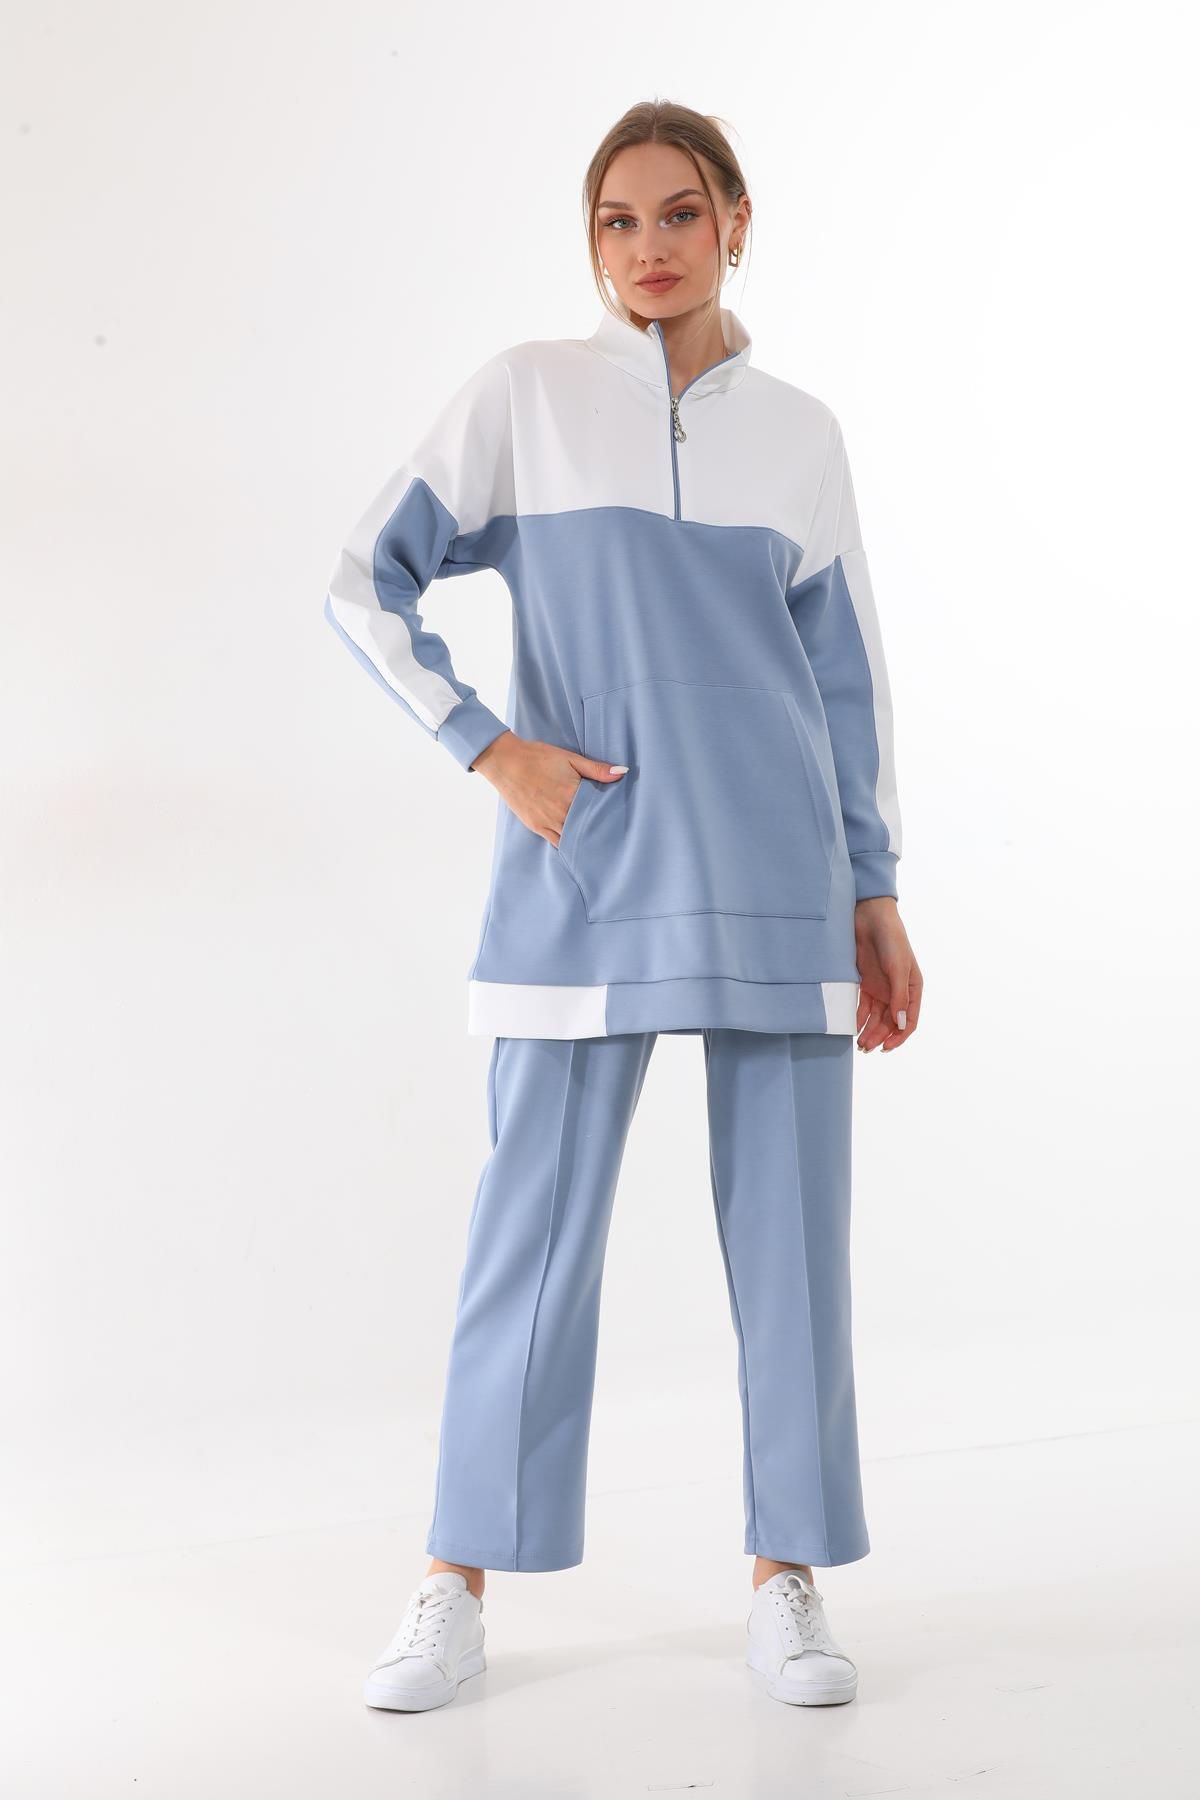 westbound Kadın Mavi Renk Desenli Tesettür Giyim Spor Ikili Günlük Takım